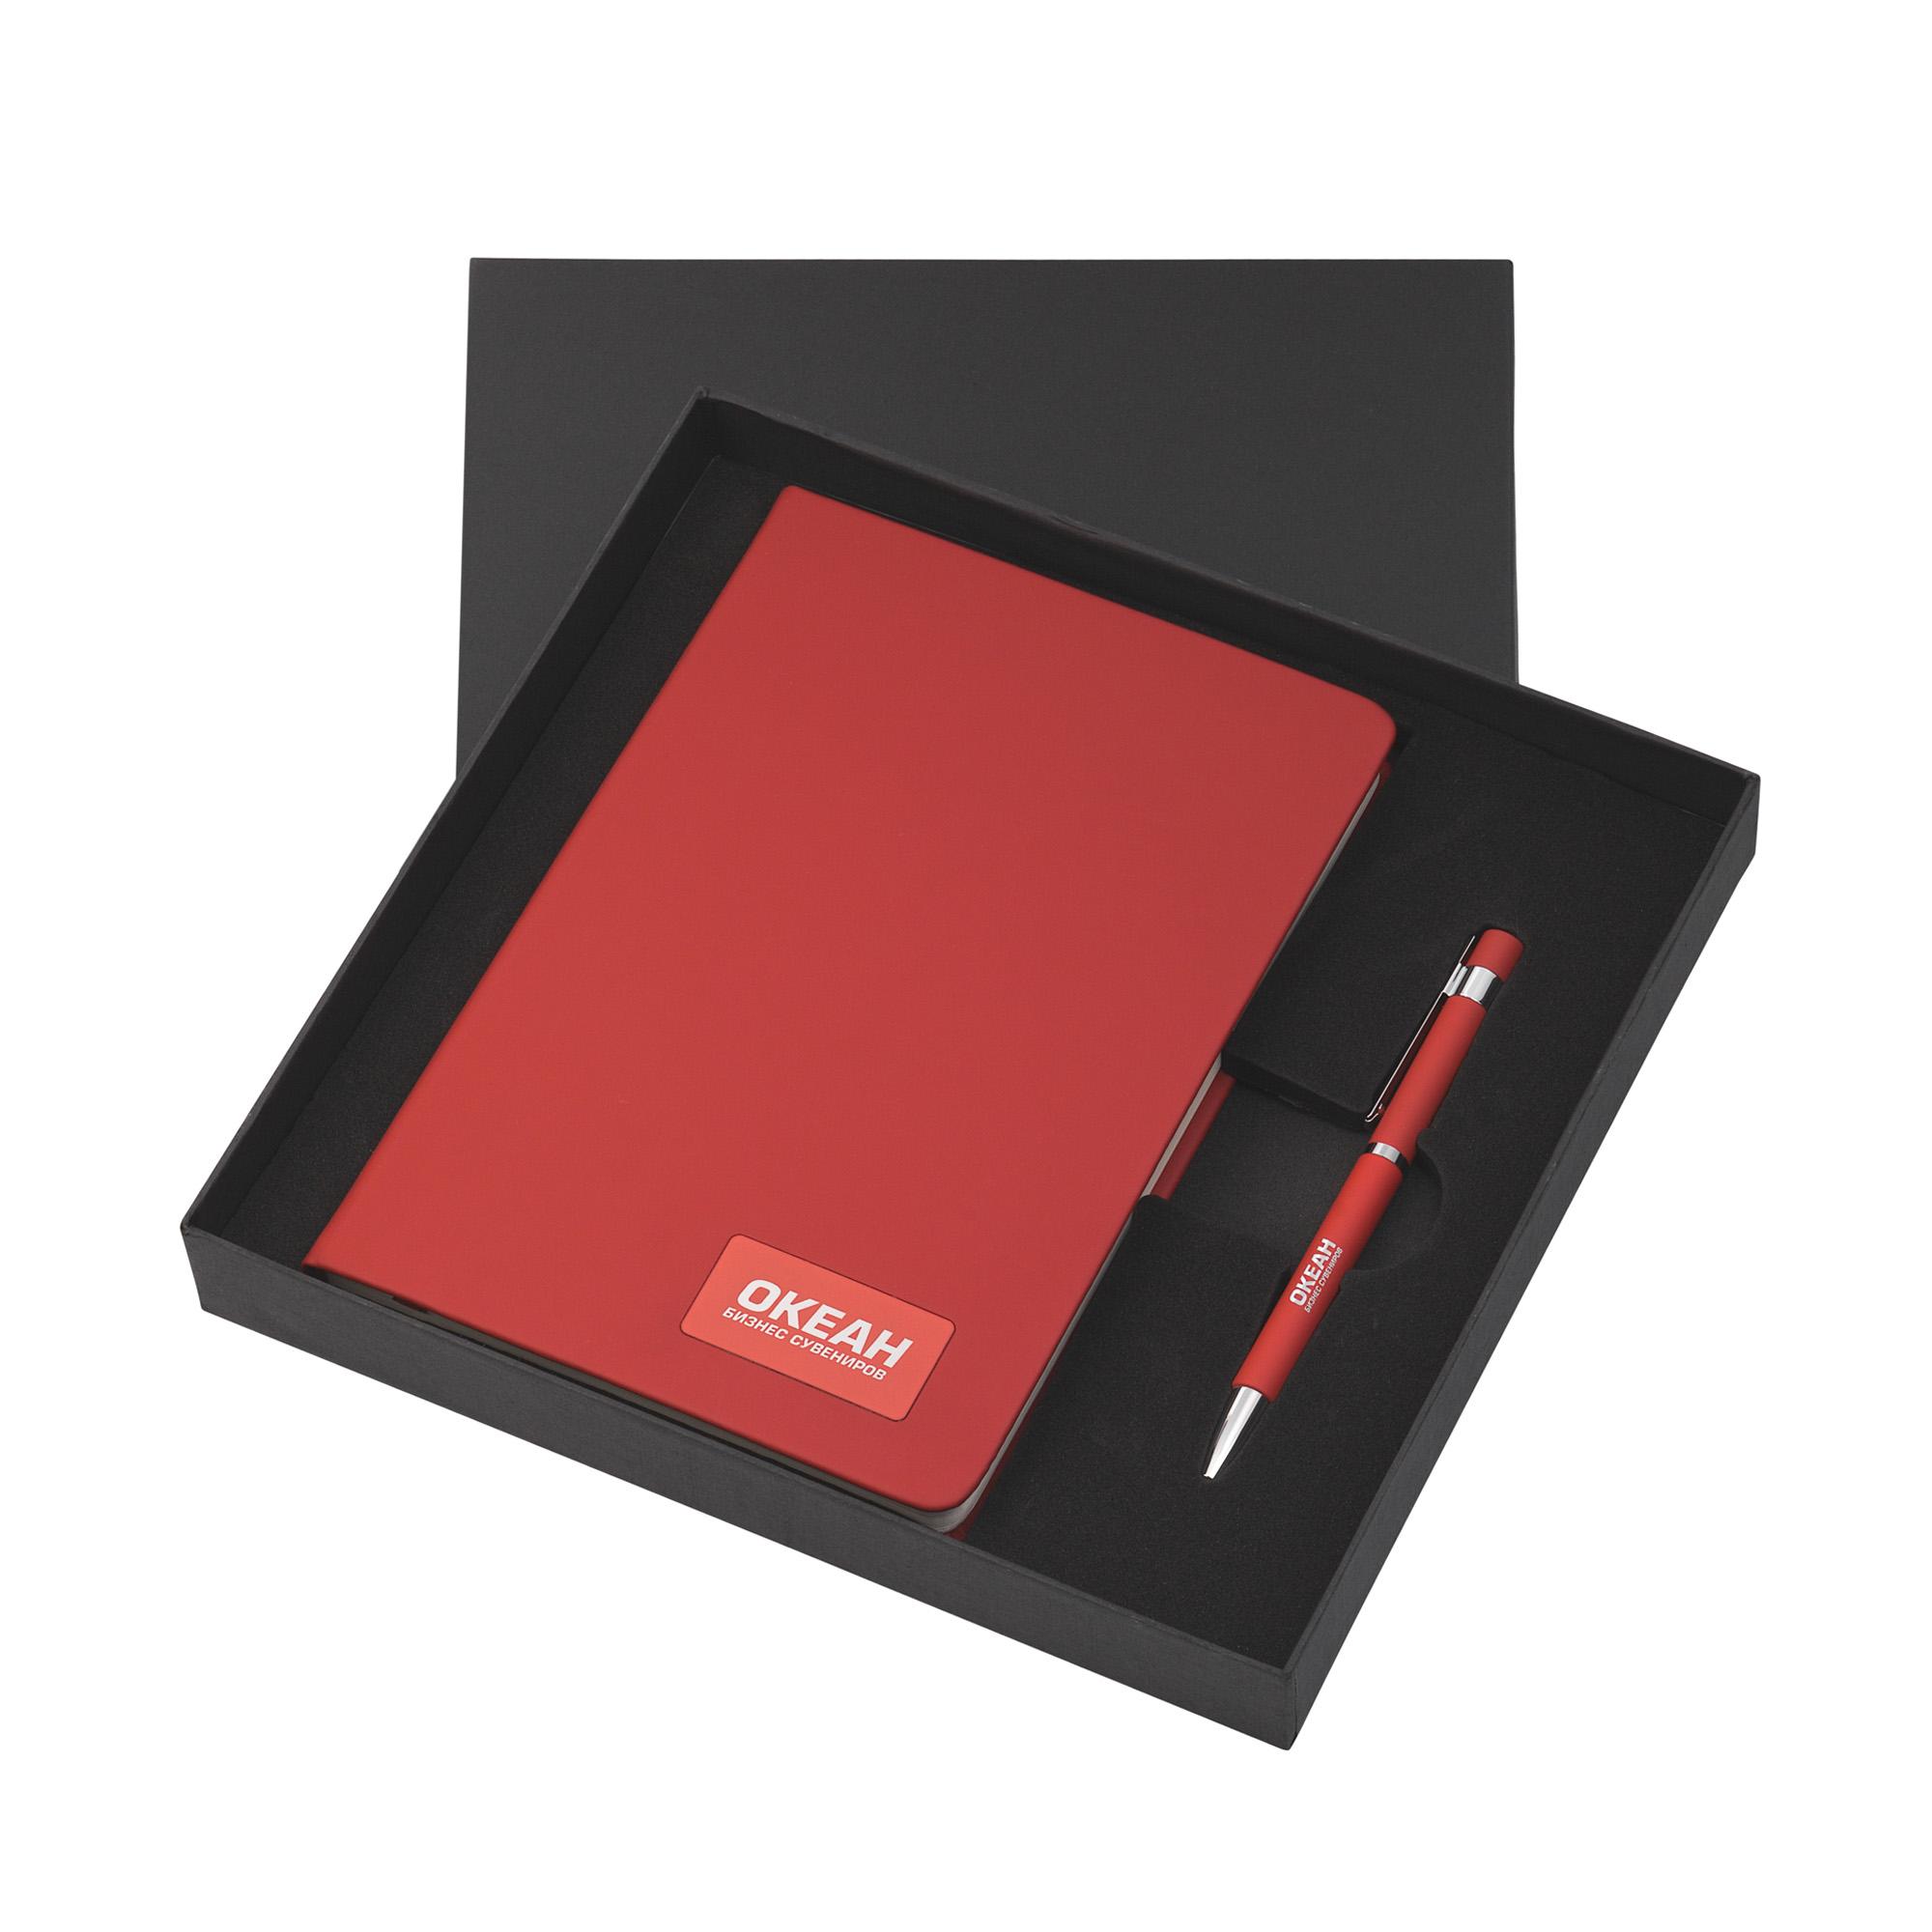 Подарочный набор "Парма", покрытие soft touch, цвет красный, фото 5